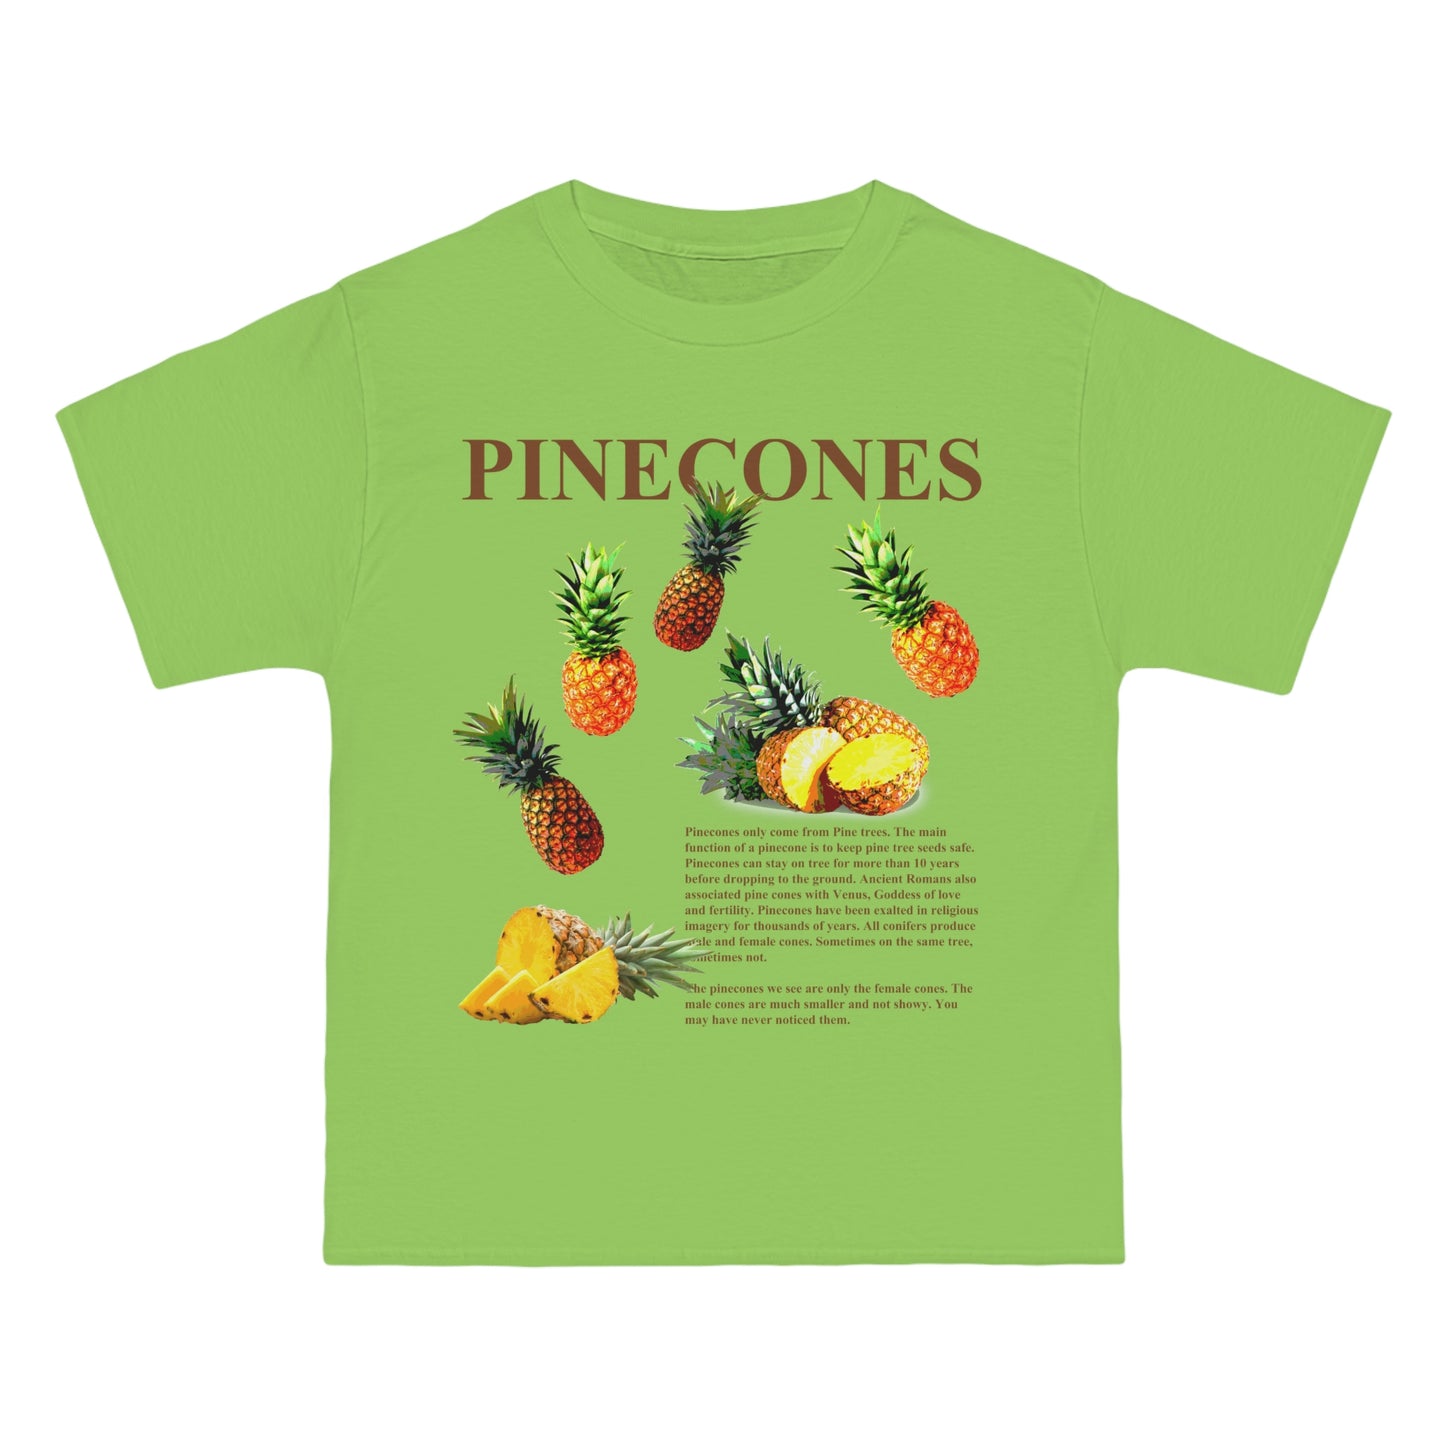 PINECONES